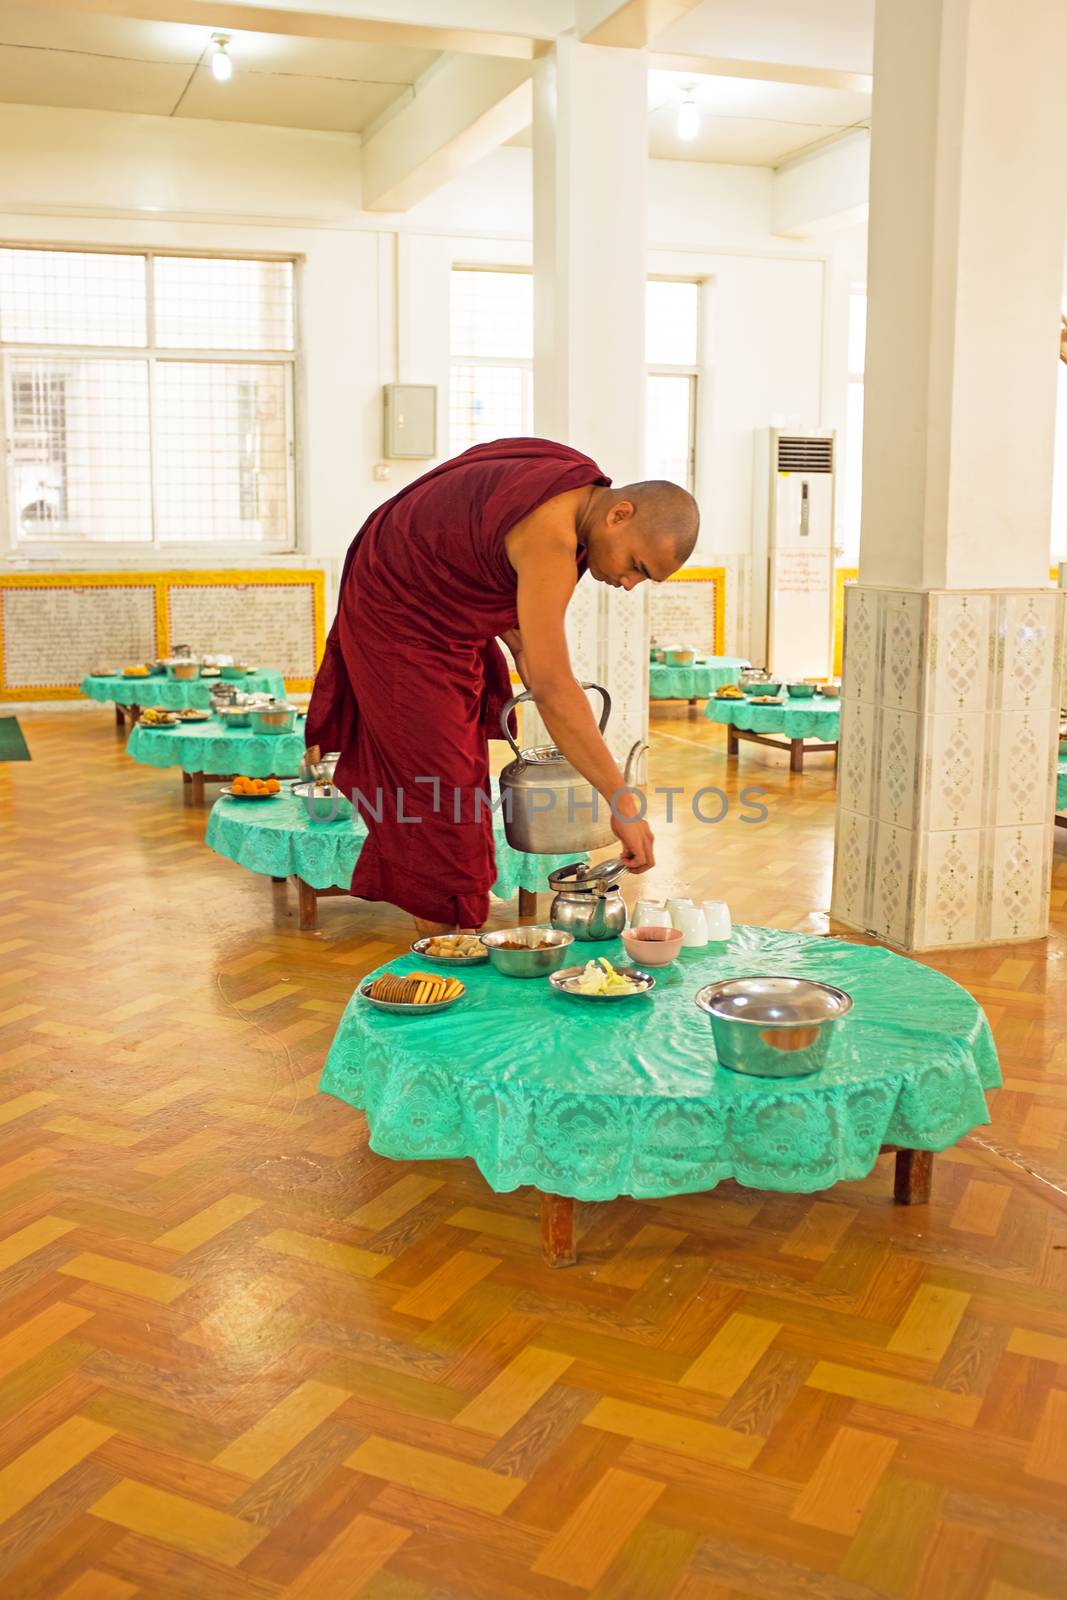 BAGO, MYANMAR -November 26, 2015: Monk serving tea in the monast by devy